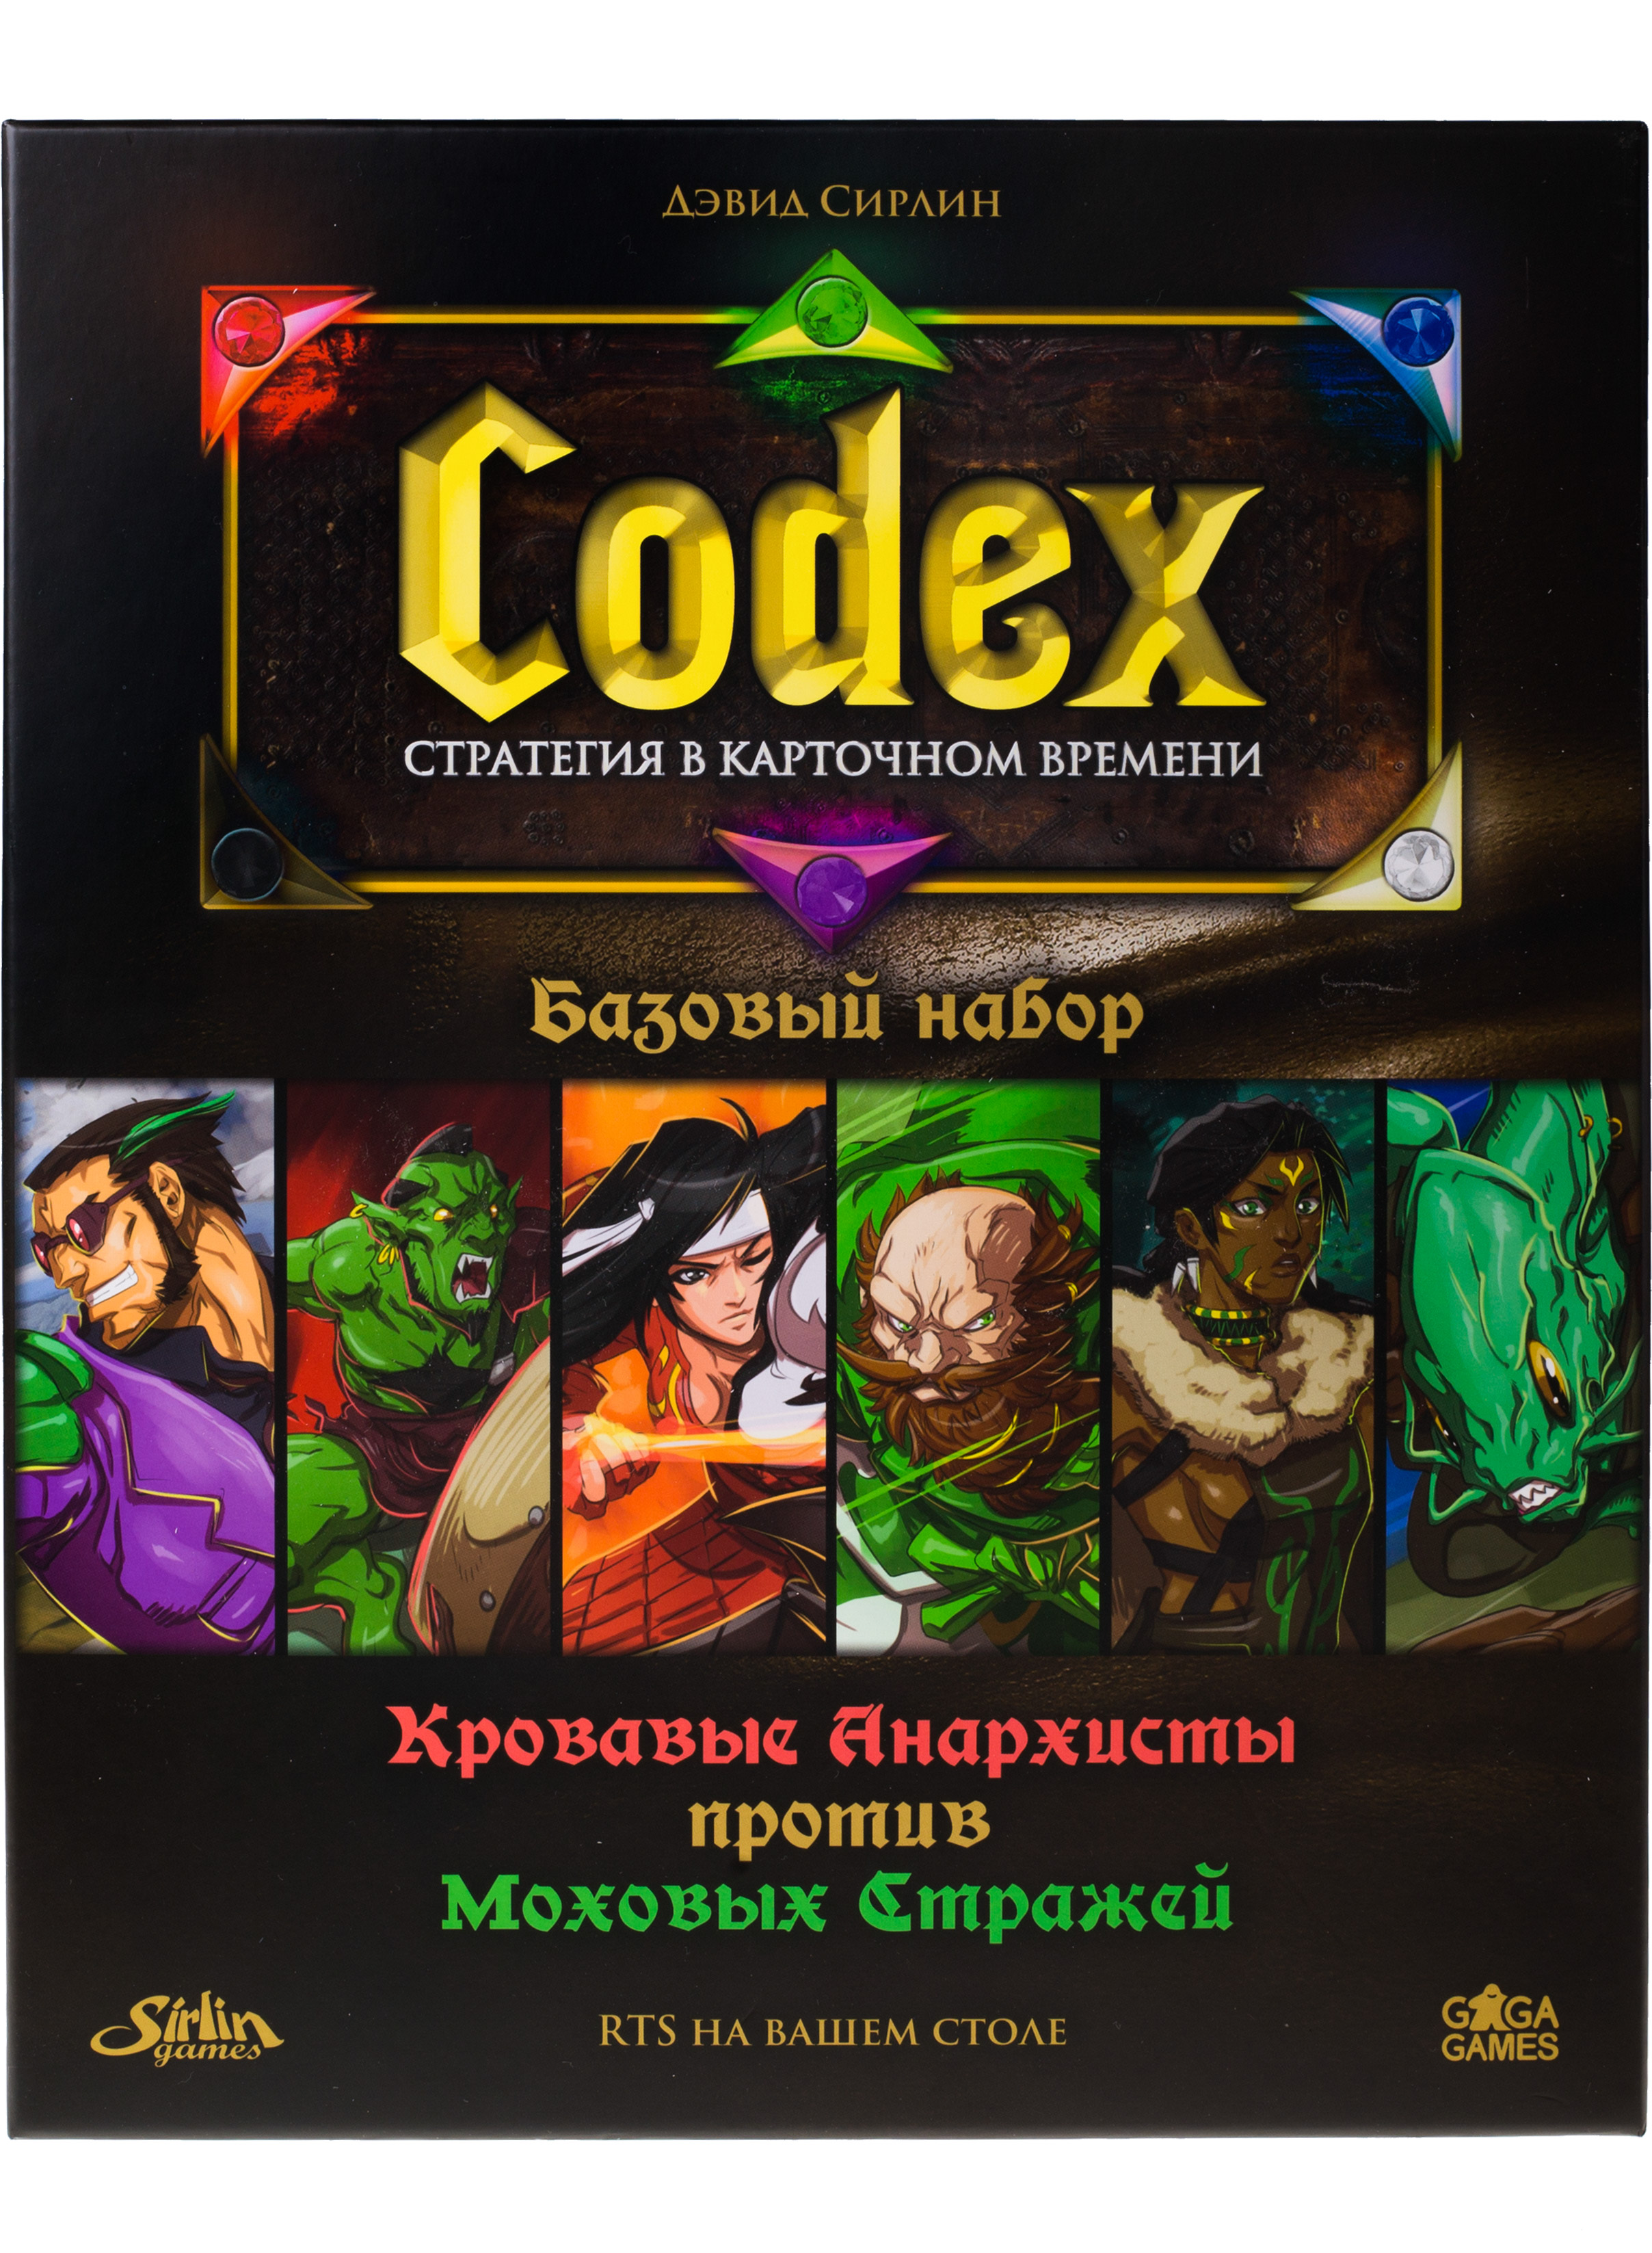 Карточная игра Gaga Games Codex базовый набор, на русском игра мультидиск street hit премиум maxi бадминтон фрисби 40 см розово мятный